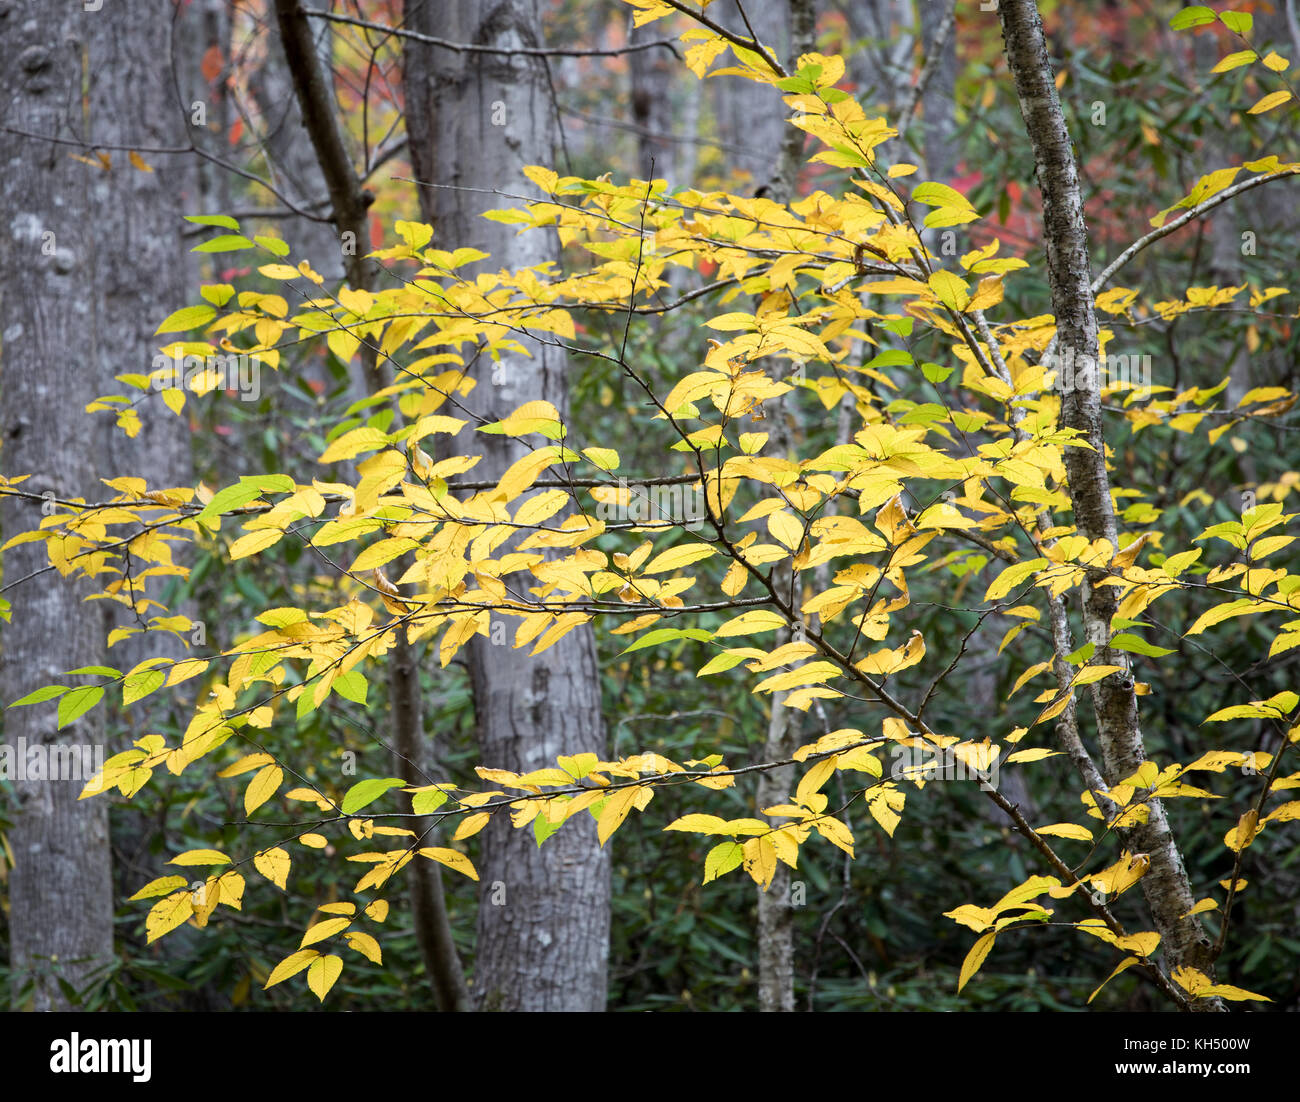 Die gelbe Birke (Betula alleghaniensis) wächst in der Regel im nordöstlichen Teil der Vereinigten Staaten. sein Lebensraum in den Südosten der Vereinigten Staaten in den Höhenlagen in tennesee, North Carolina und Georgia. Wie mehrere Arten der Birke Familie, die Rinde beginnt mit einem Peeling zu offenbaren, wenn sie reift. Stockfoto